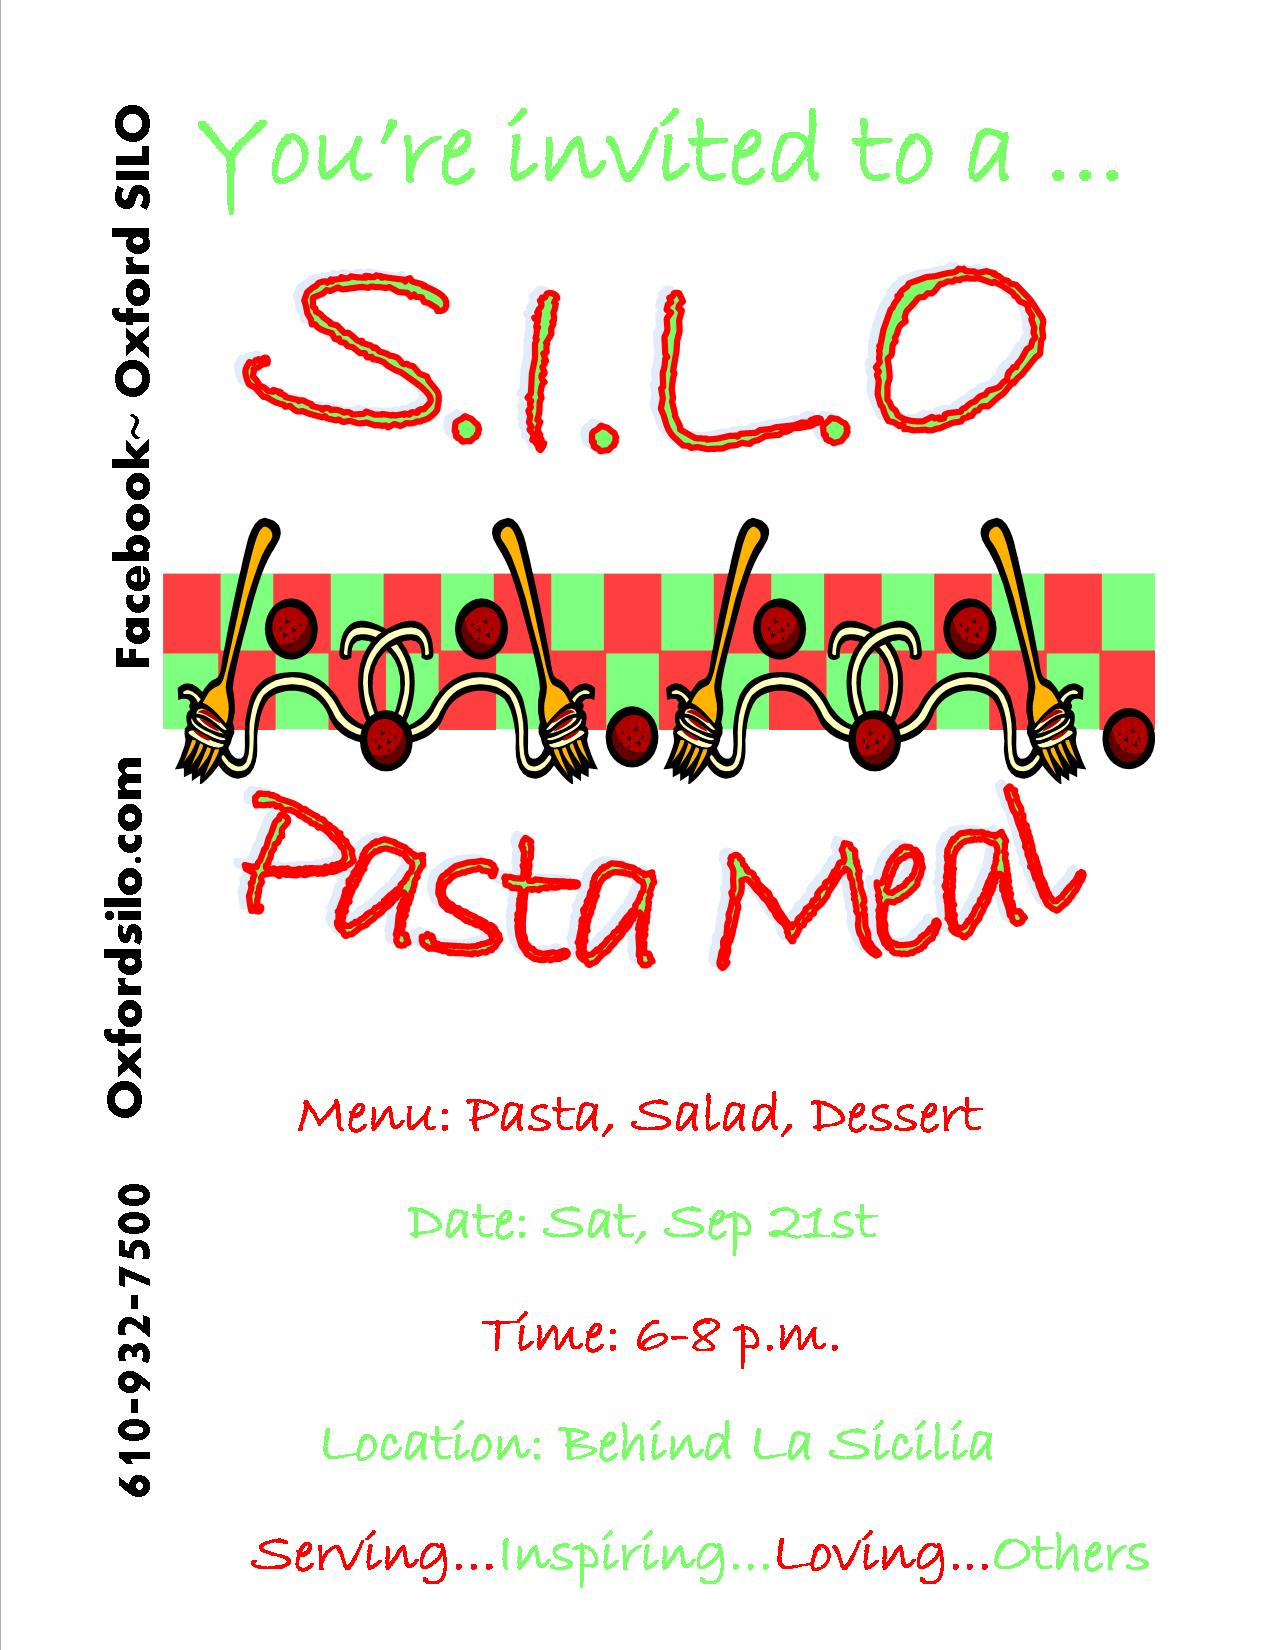 Pasta Dinner, September 21st, 6-8pm, behind La Sicilia